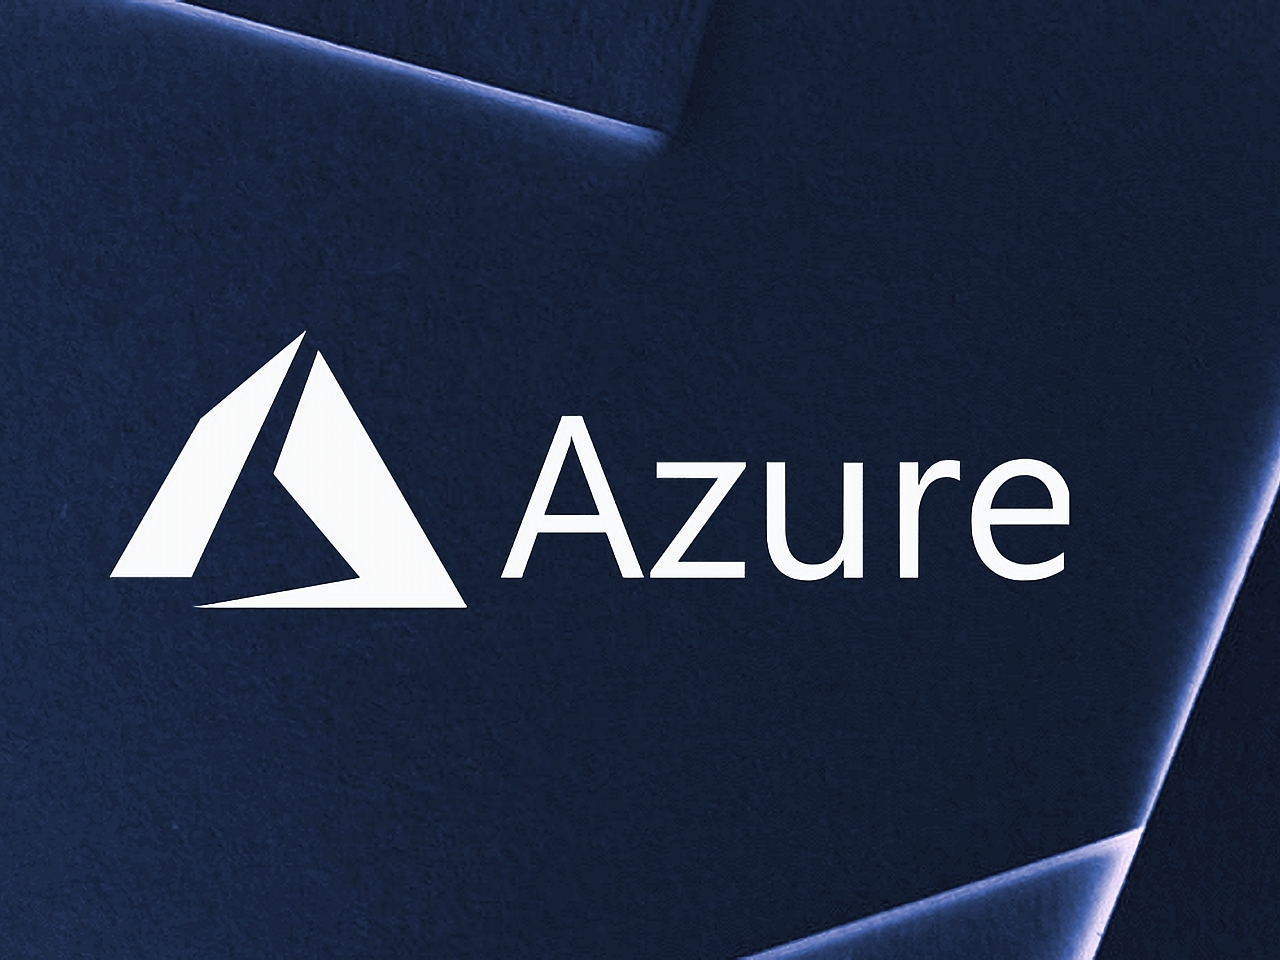 マイクロソフト「Azure」の10年、初期の主要メンバーに聞く